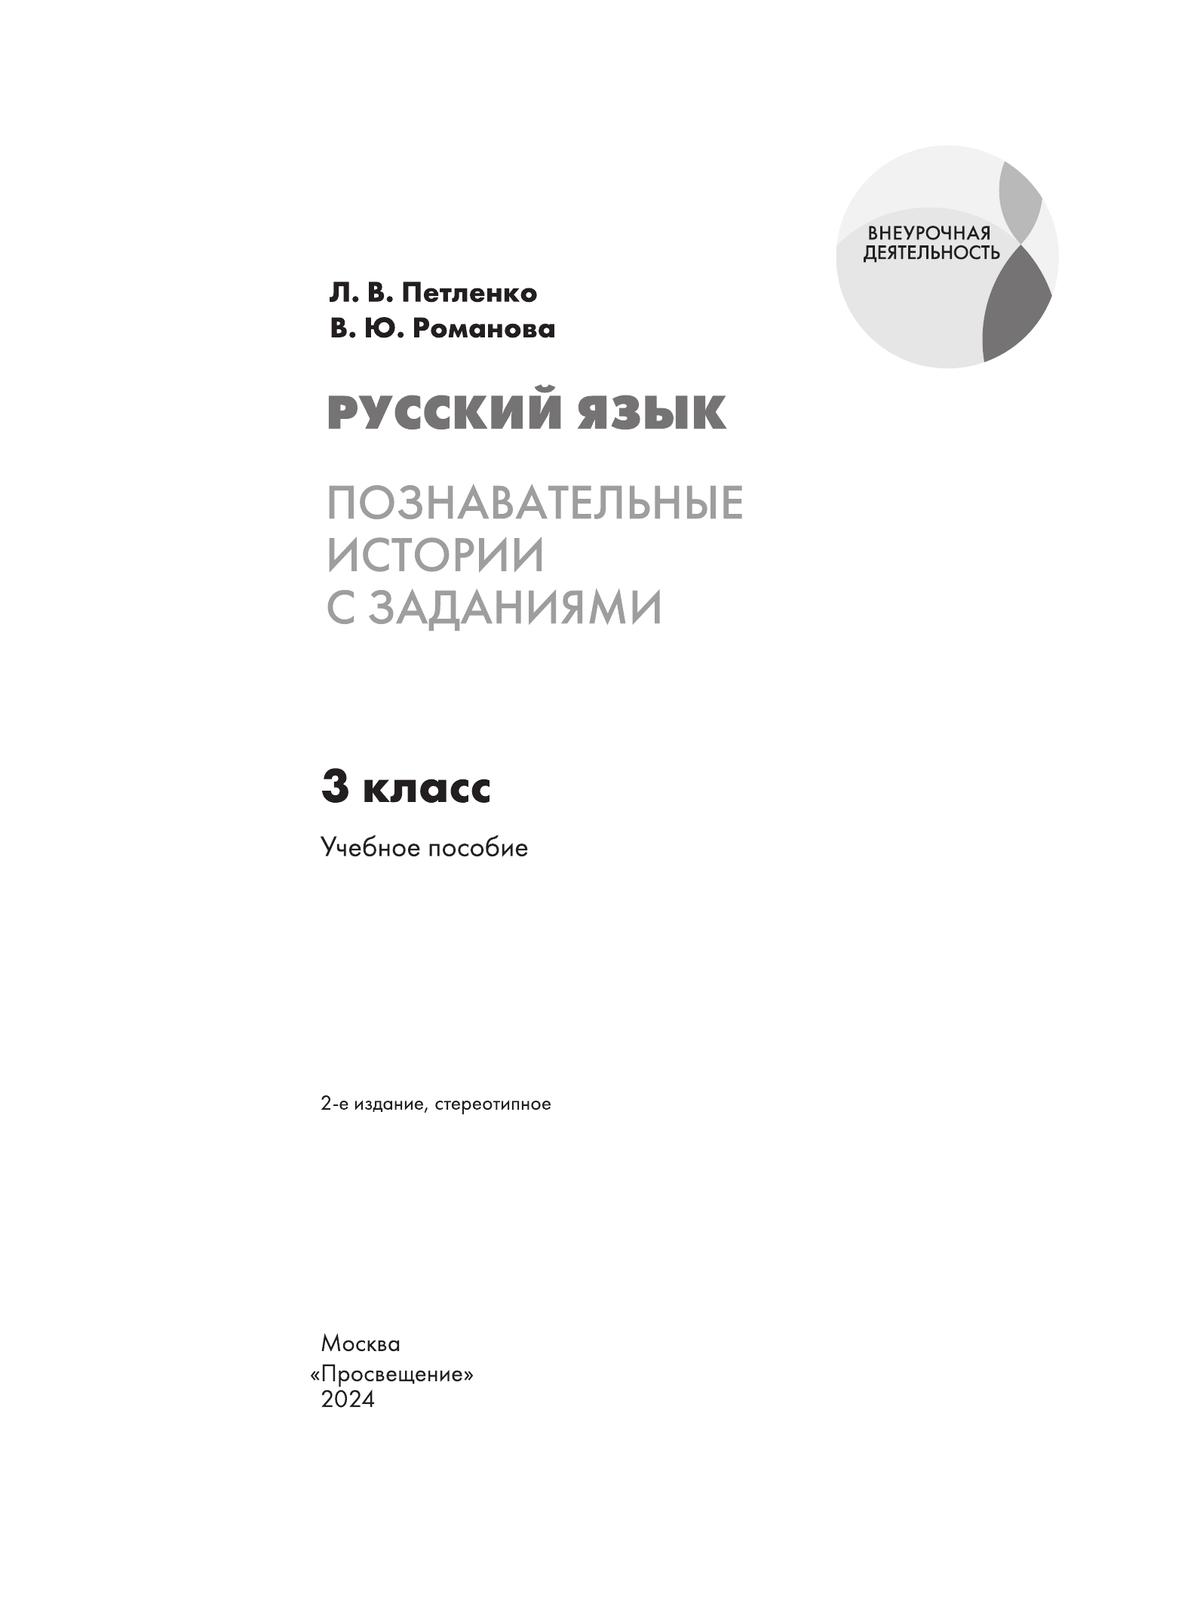 Русский язык. Познавательные истории с заданиями. 3 класс. Рабочая тетрадь 2